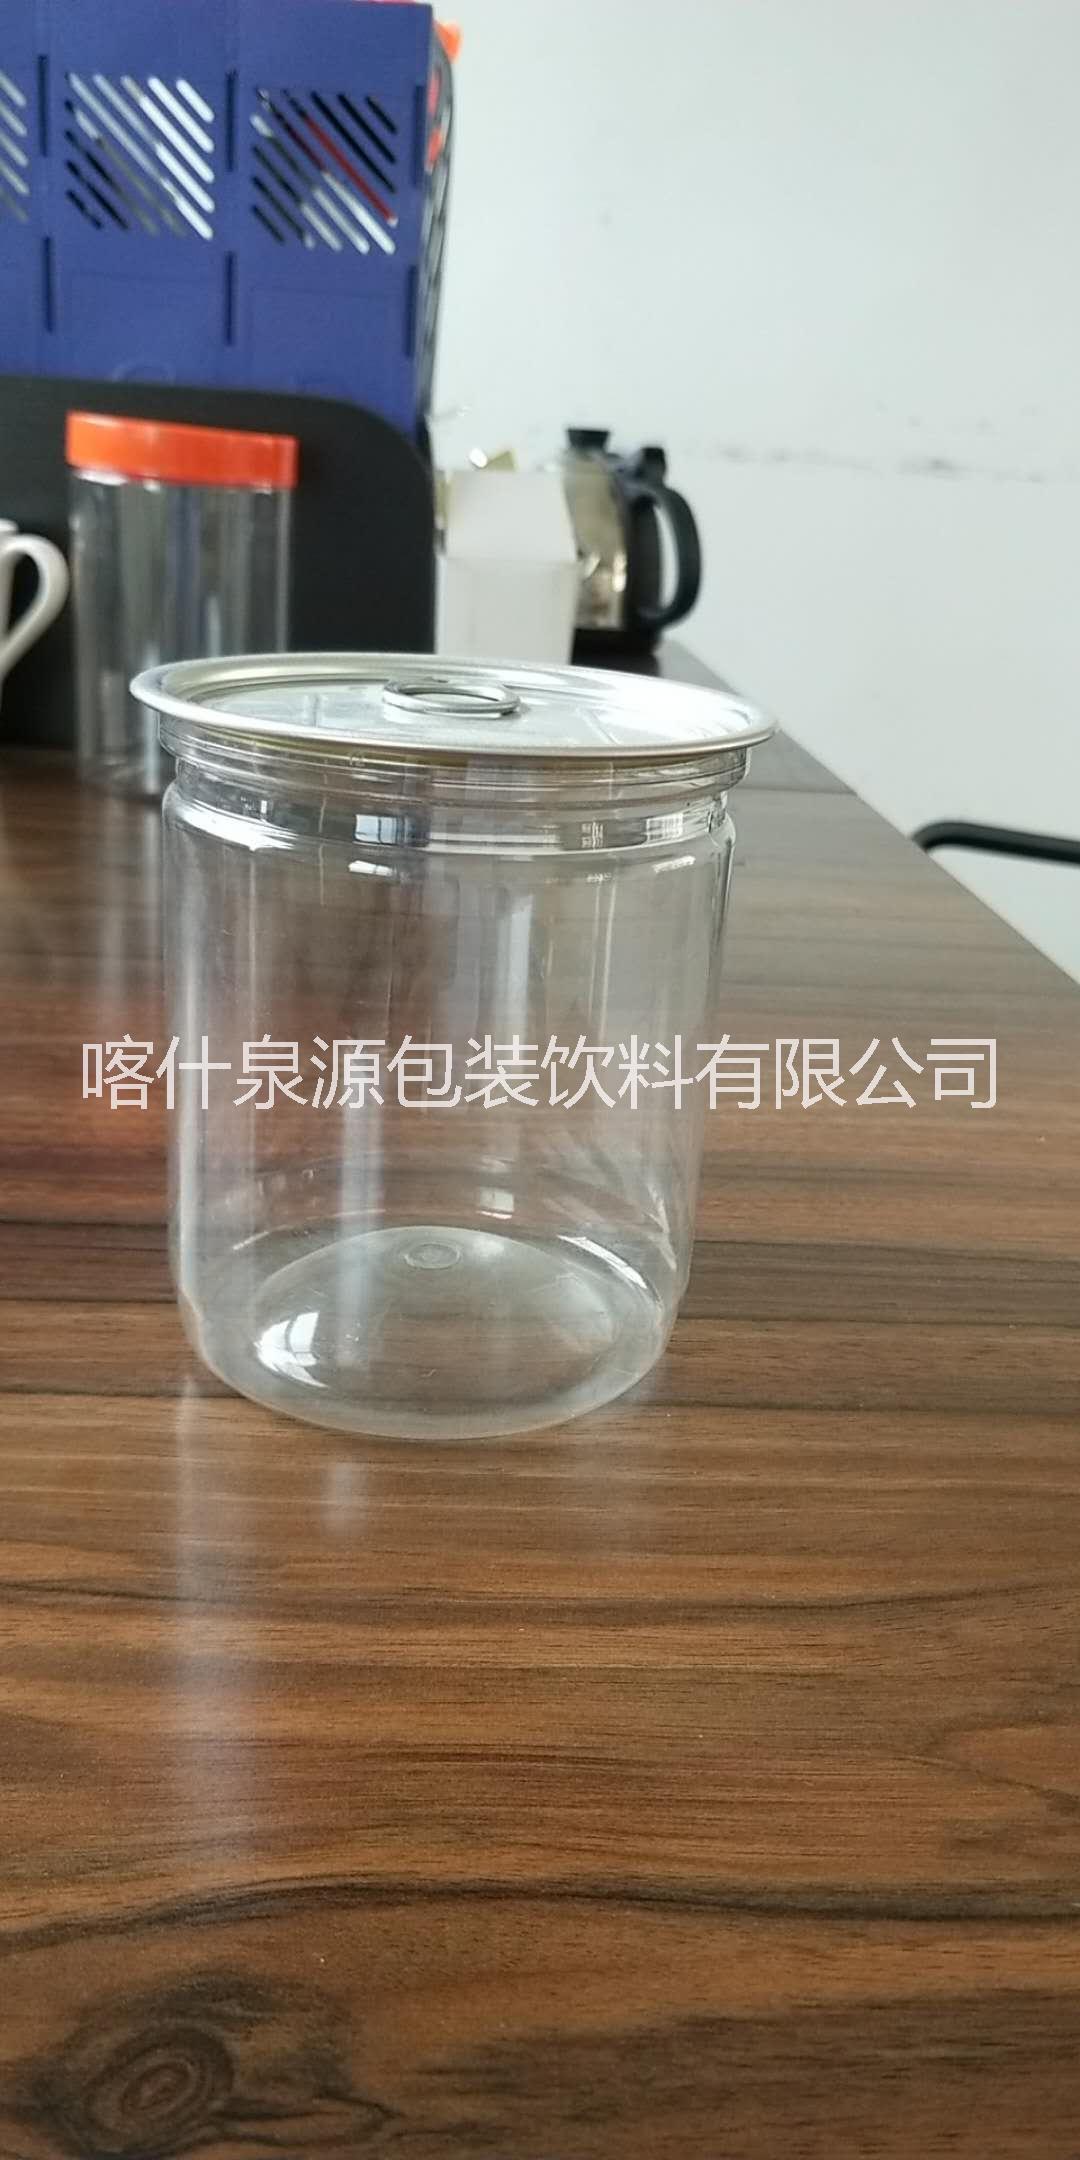 新疆塑料易拉罐厂家    喀什塑料易拉罐价格    塑料易拉罐批发    塑料易拉罐图片